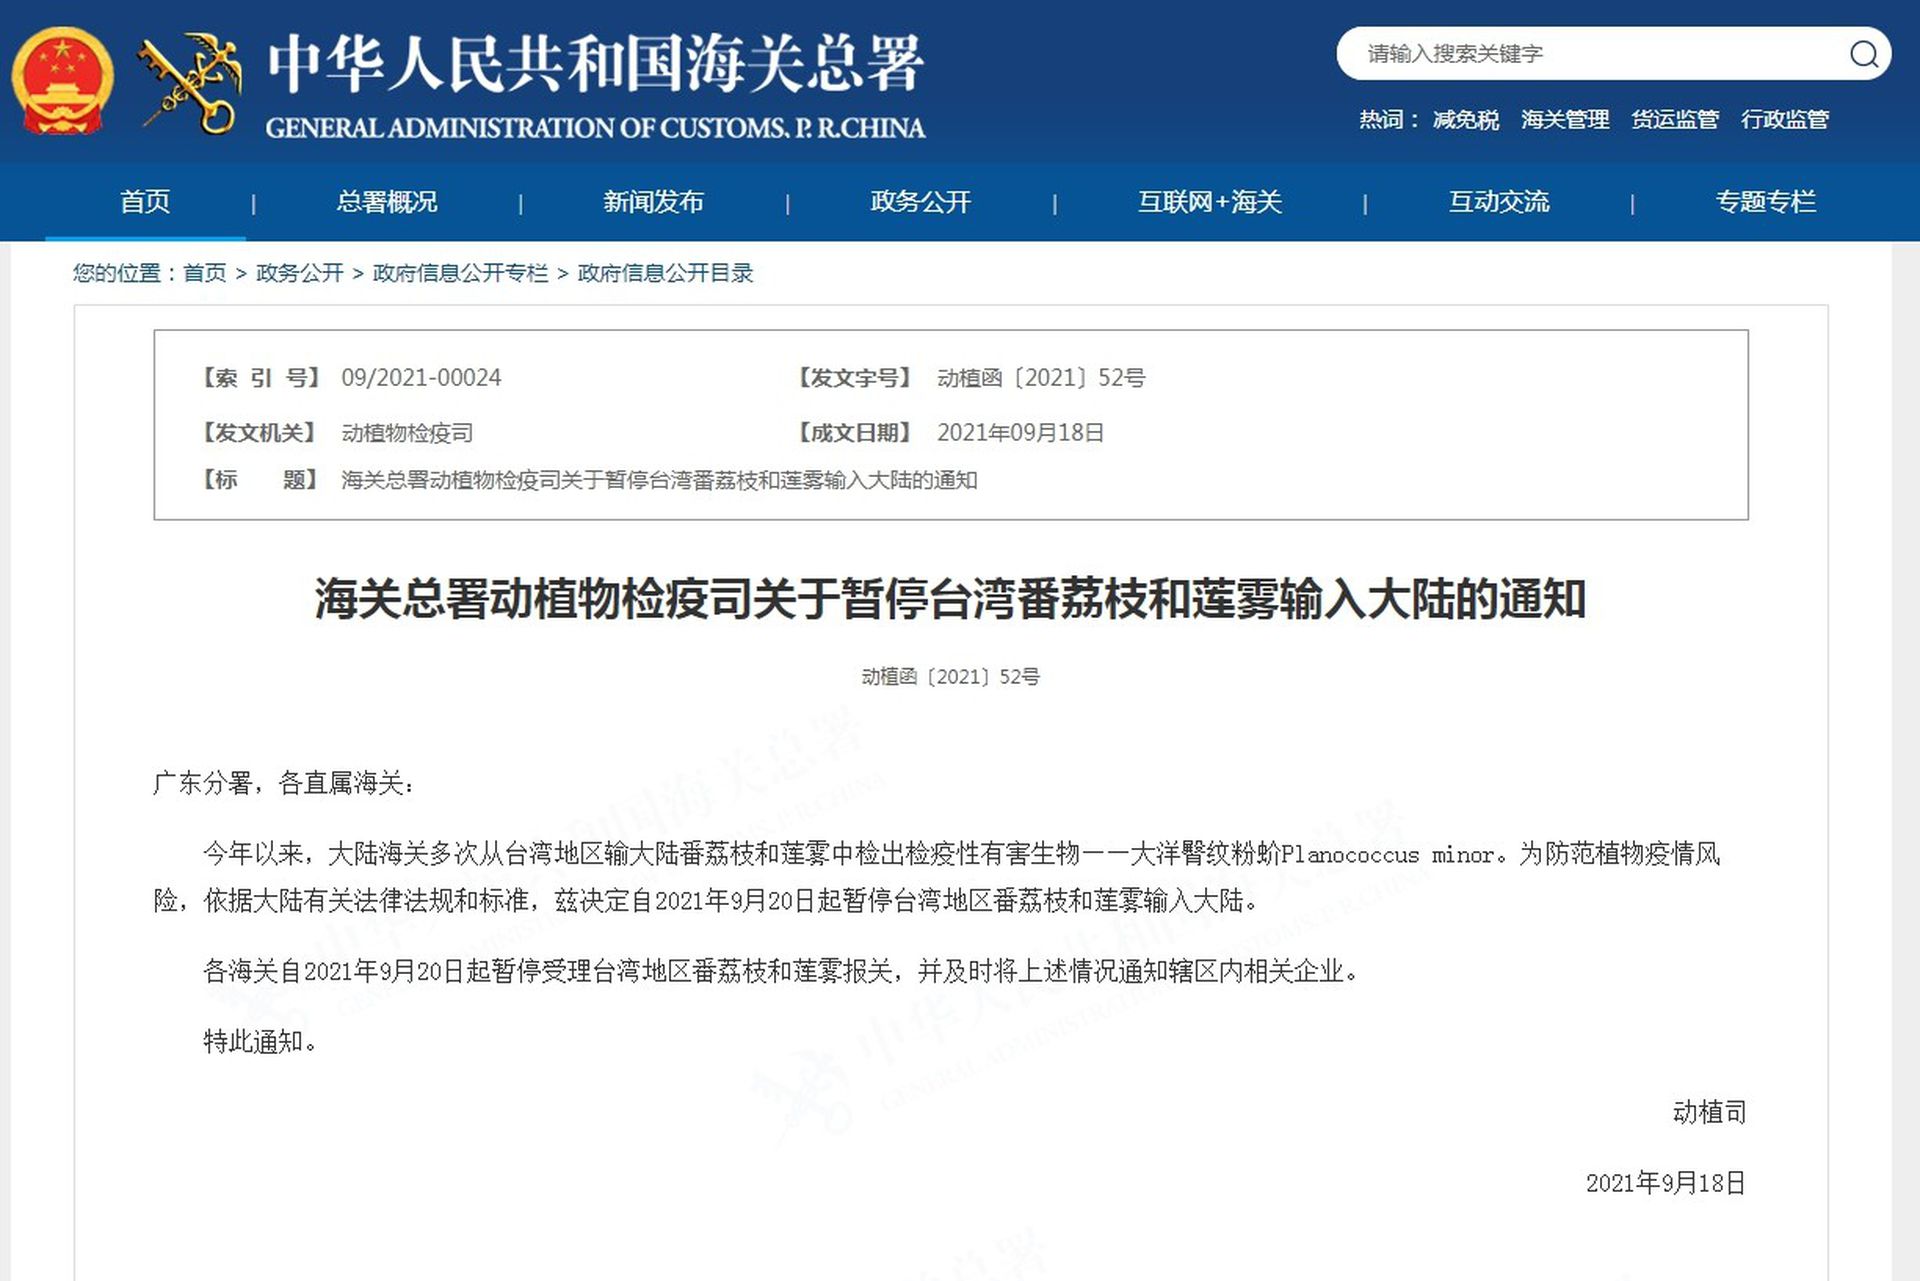 中国海关总署发出公告禁止输入台湾释迦与莲雾。（截取自中国海关总署官网）